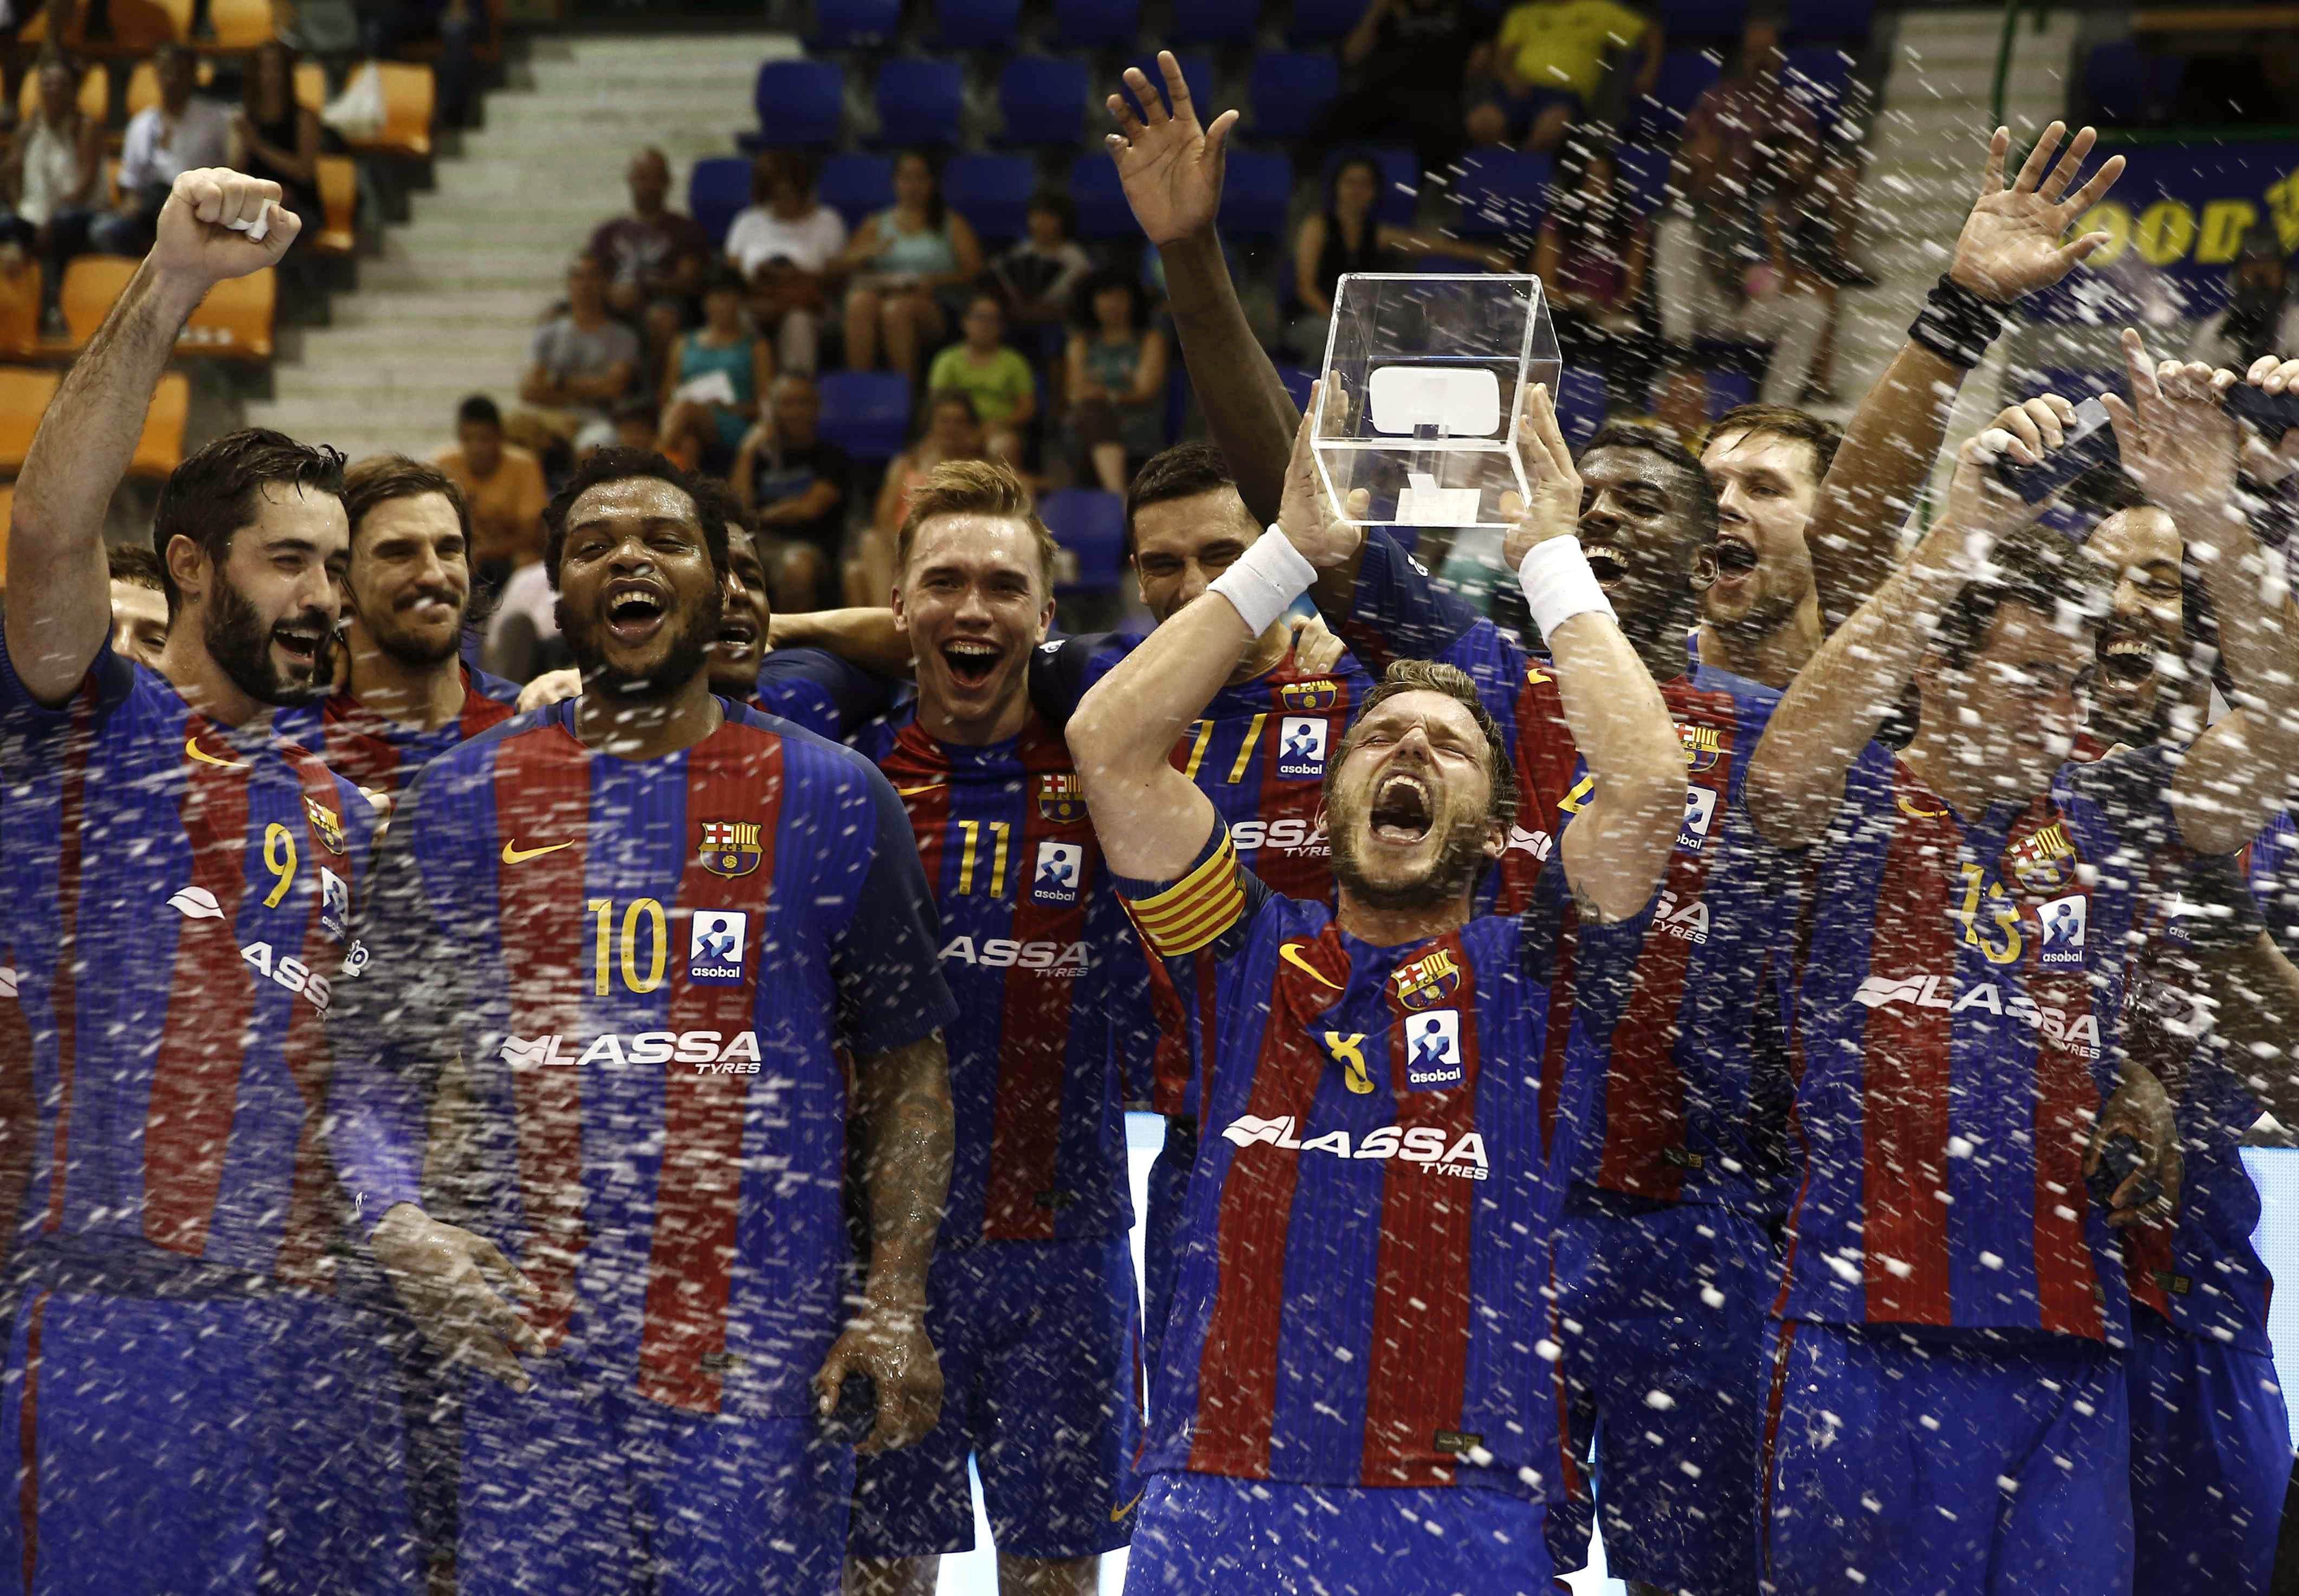 El Barça és campió de la Supercopa Asobal (30-38)